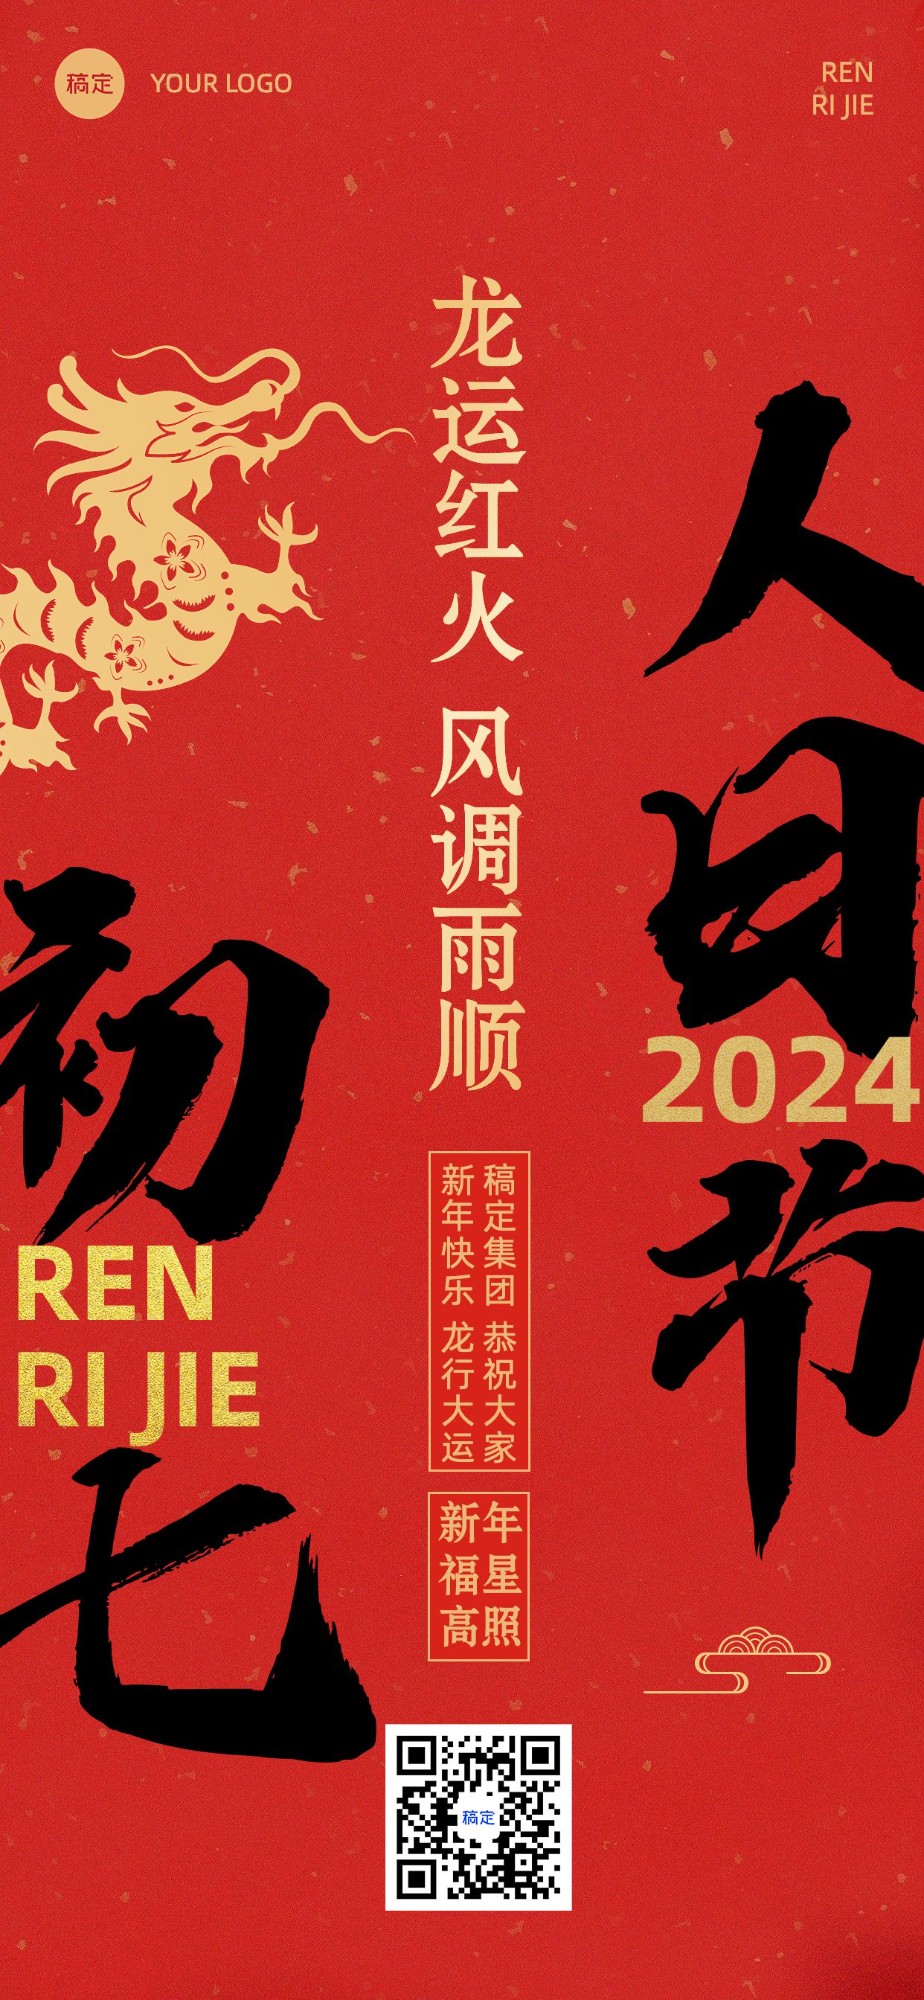 企业春节正月初七节日祝福大字风全屏竖版海报预览效果